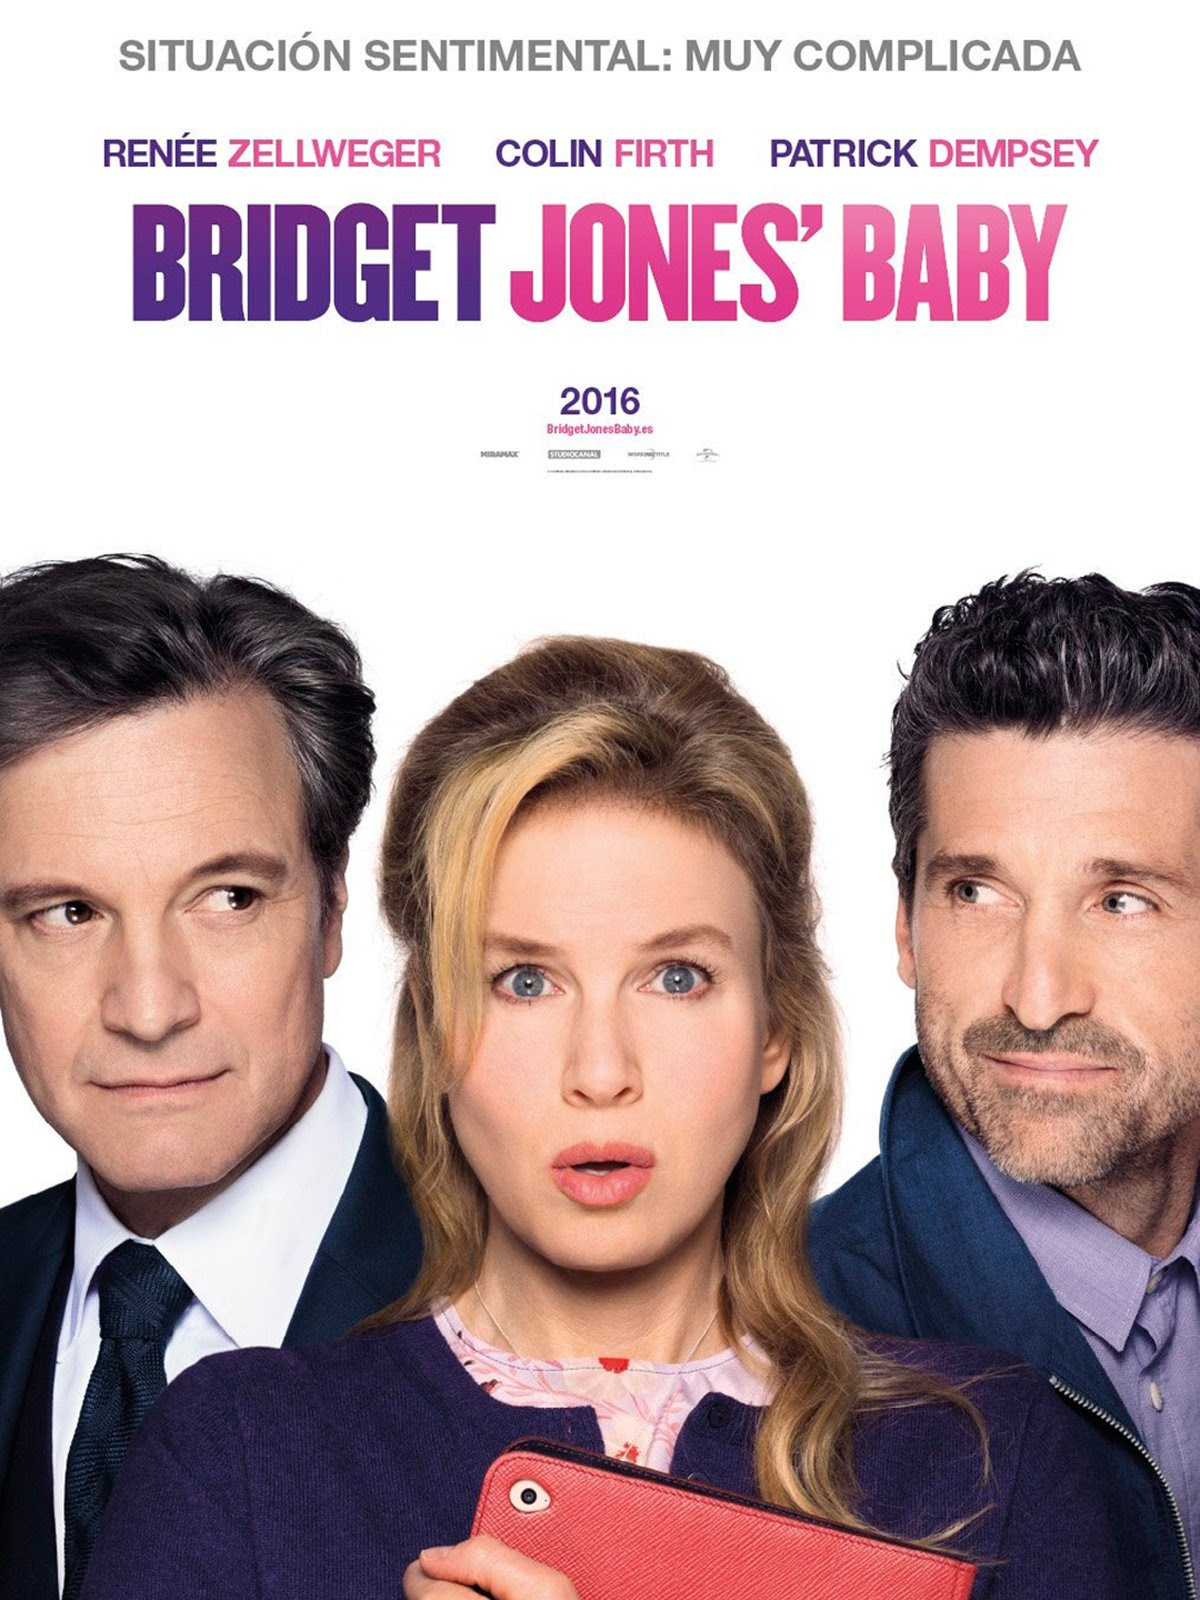 póster de Bridget Jones' baby